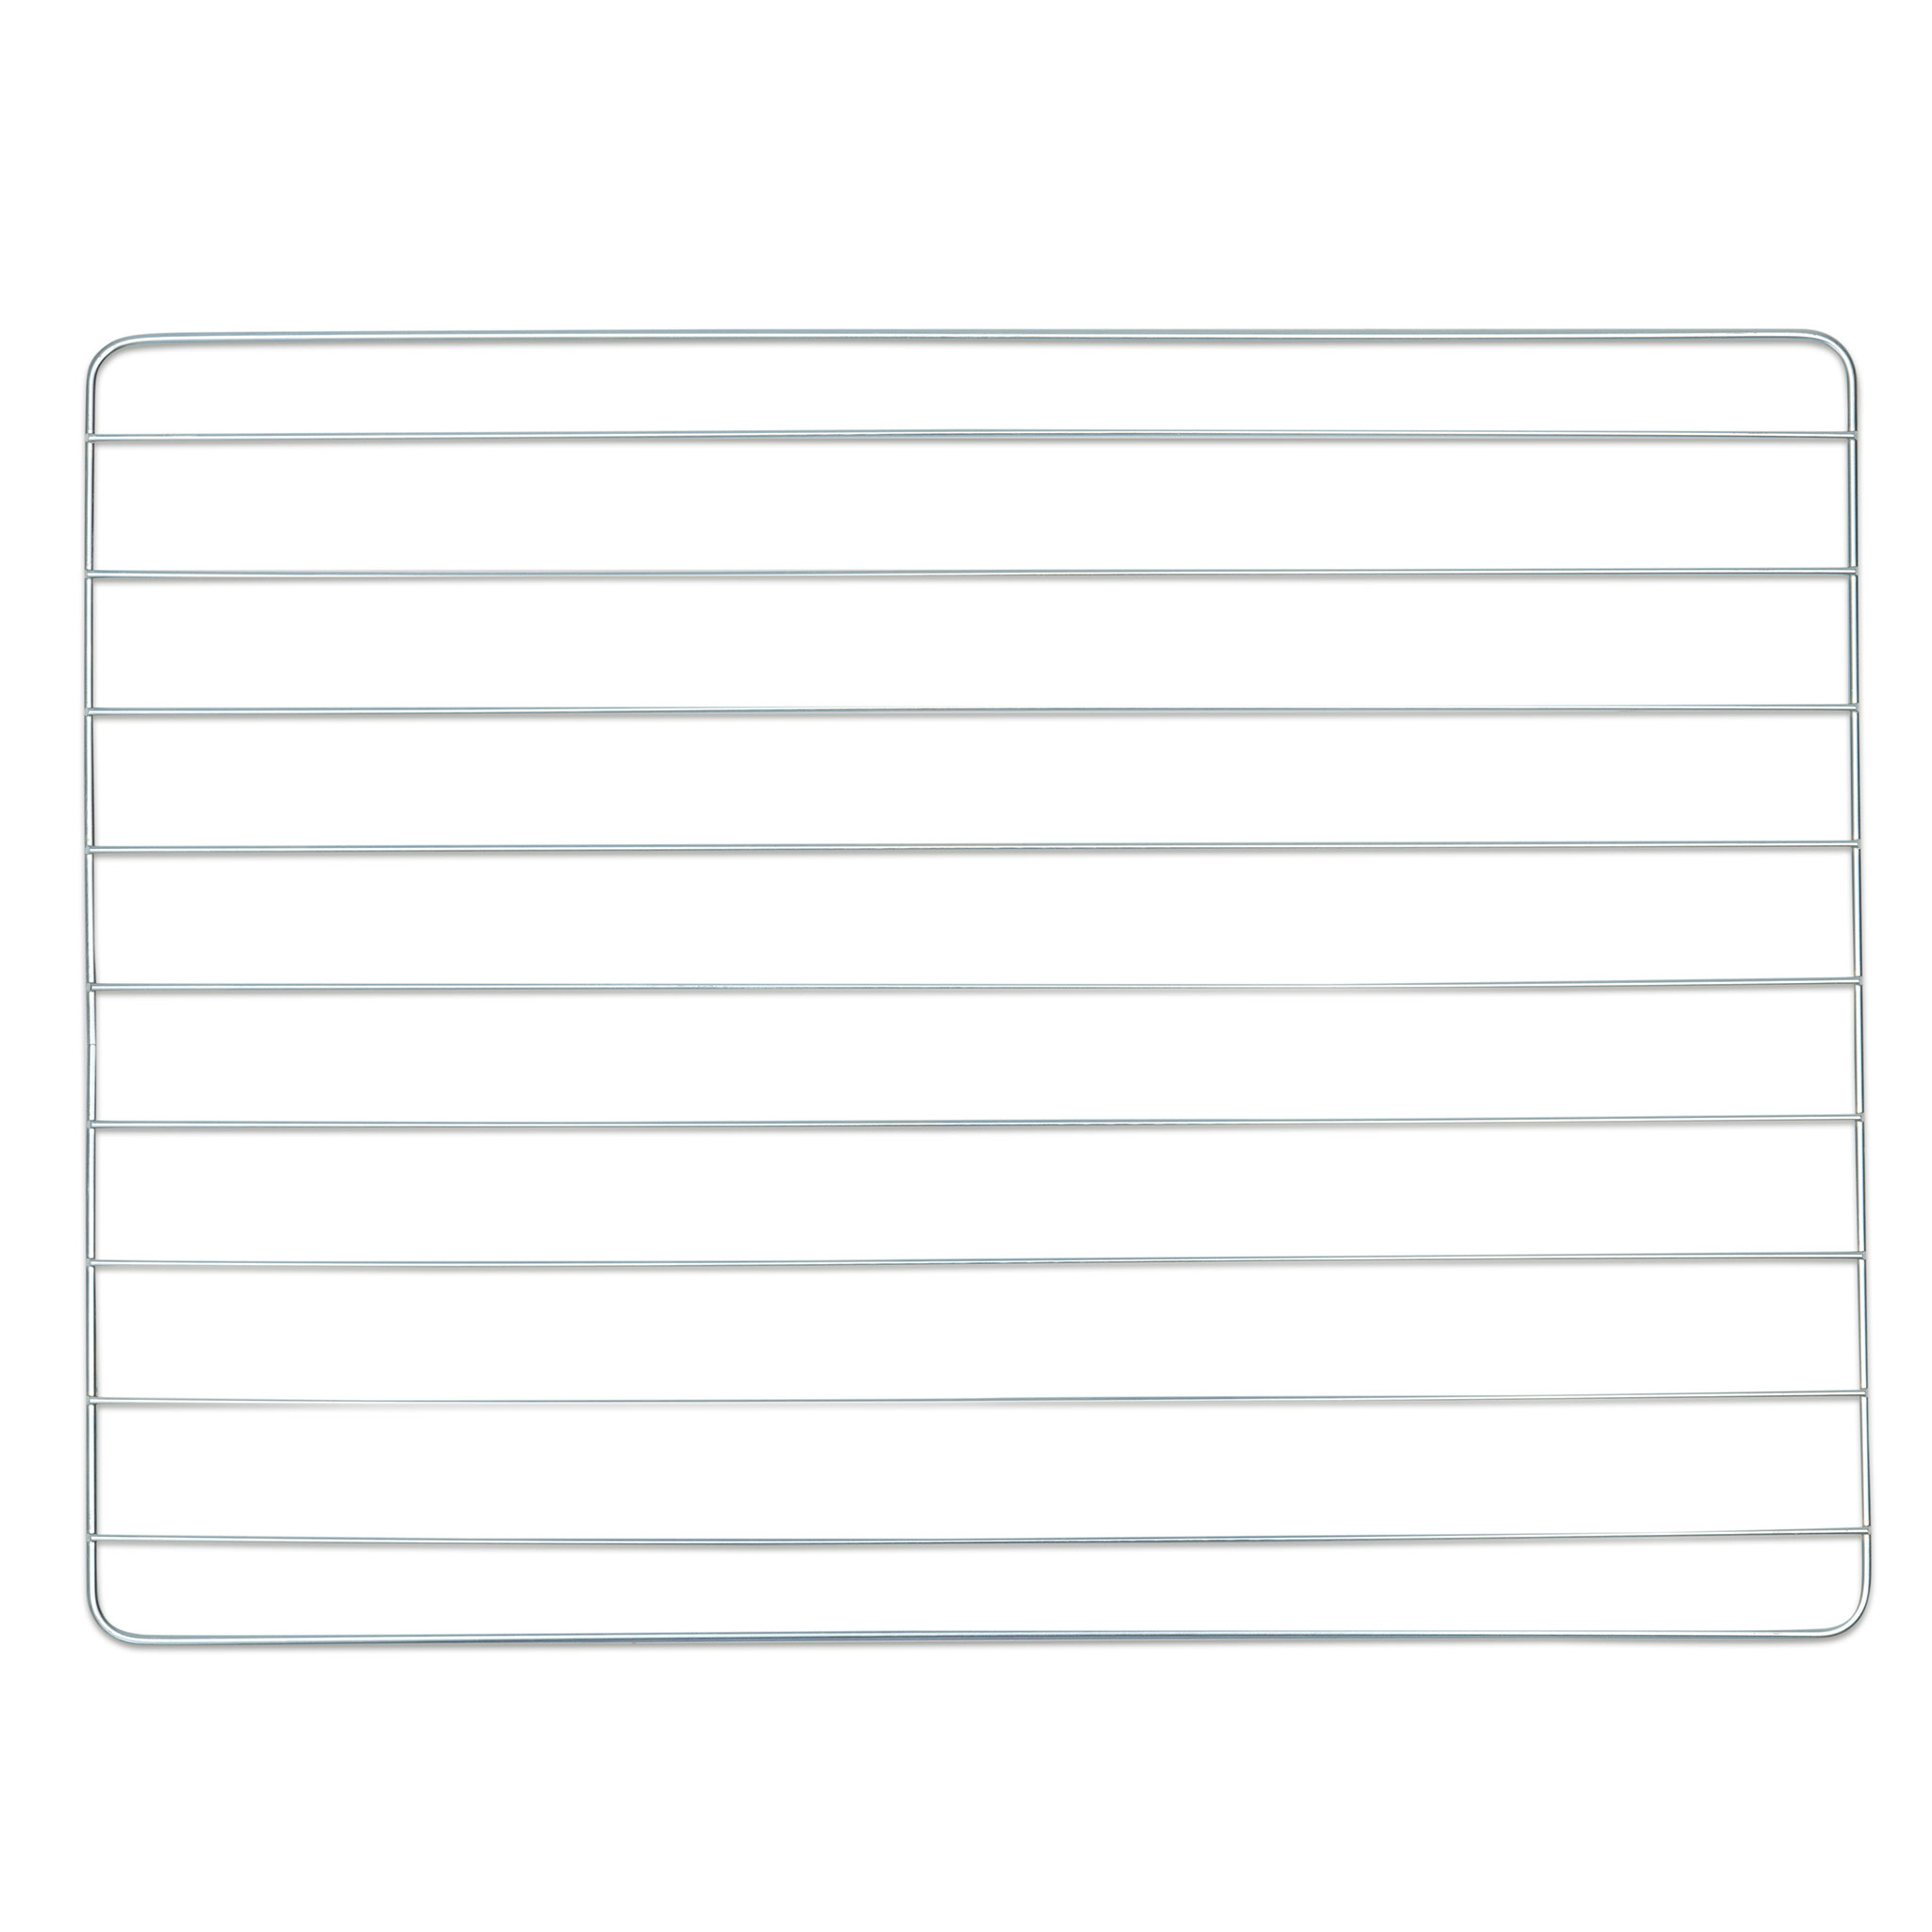 Zusätzliche Drahtgitterablage Maxi In 5 By 8 Index Card Template